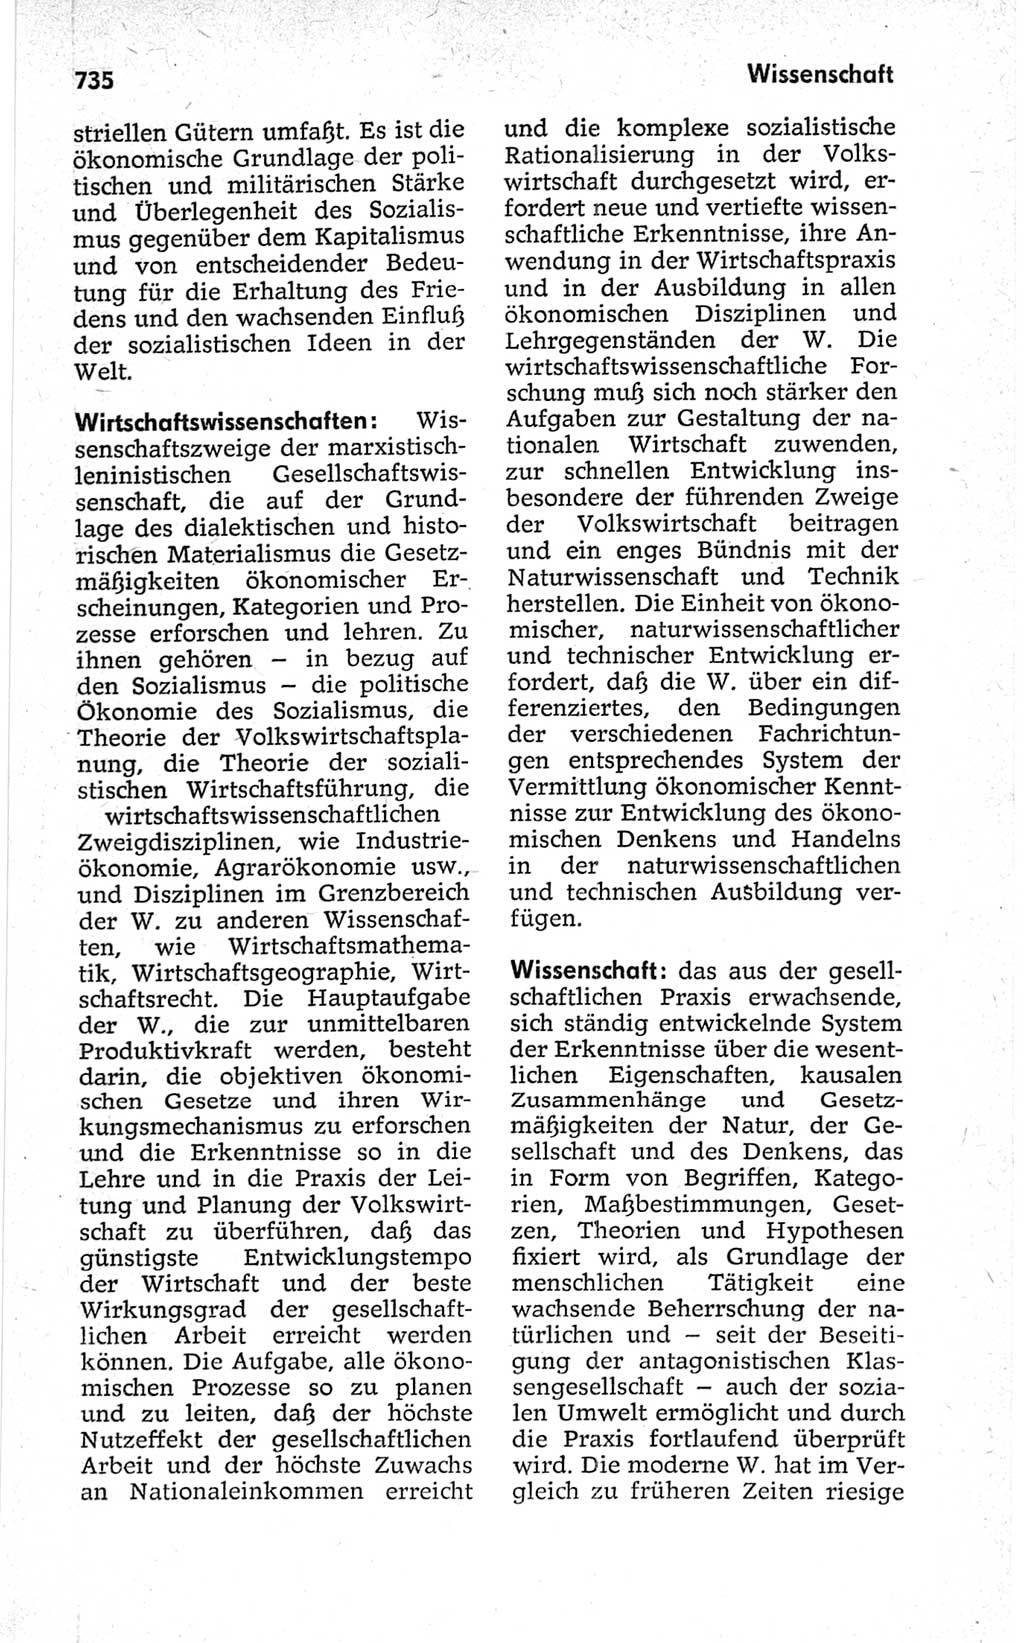 Kleines politisches Wörterbuch [Deutsche Demokratische Republik (DDR)] 1967, Seite 735 (Kl. pol. Wb. DDR 1967, S. 735)